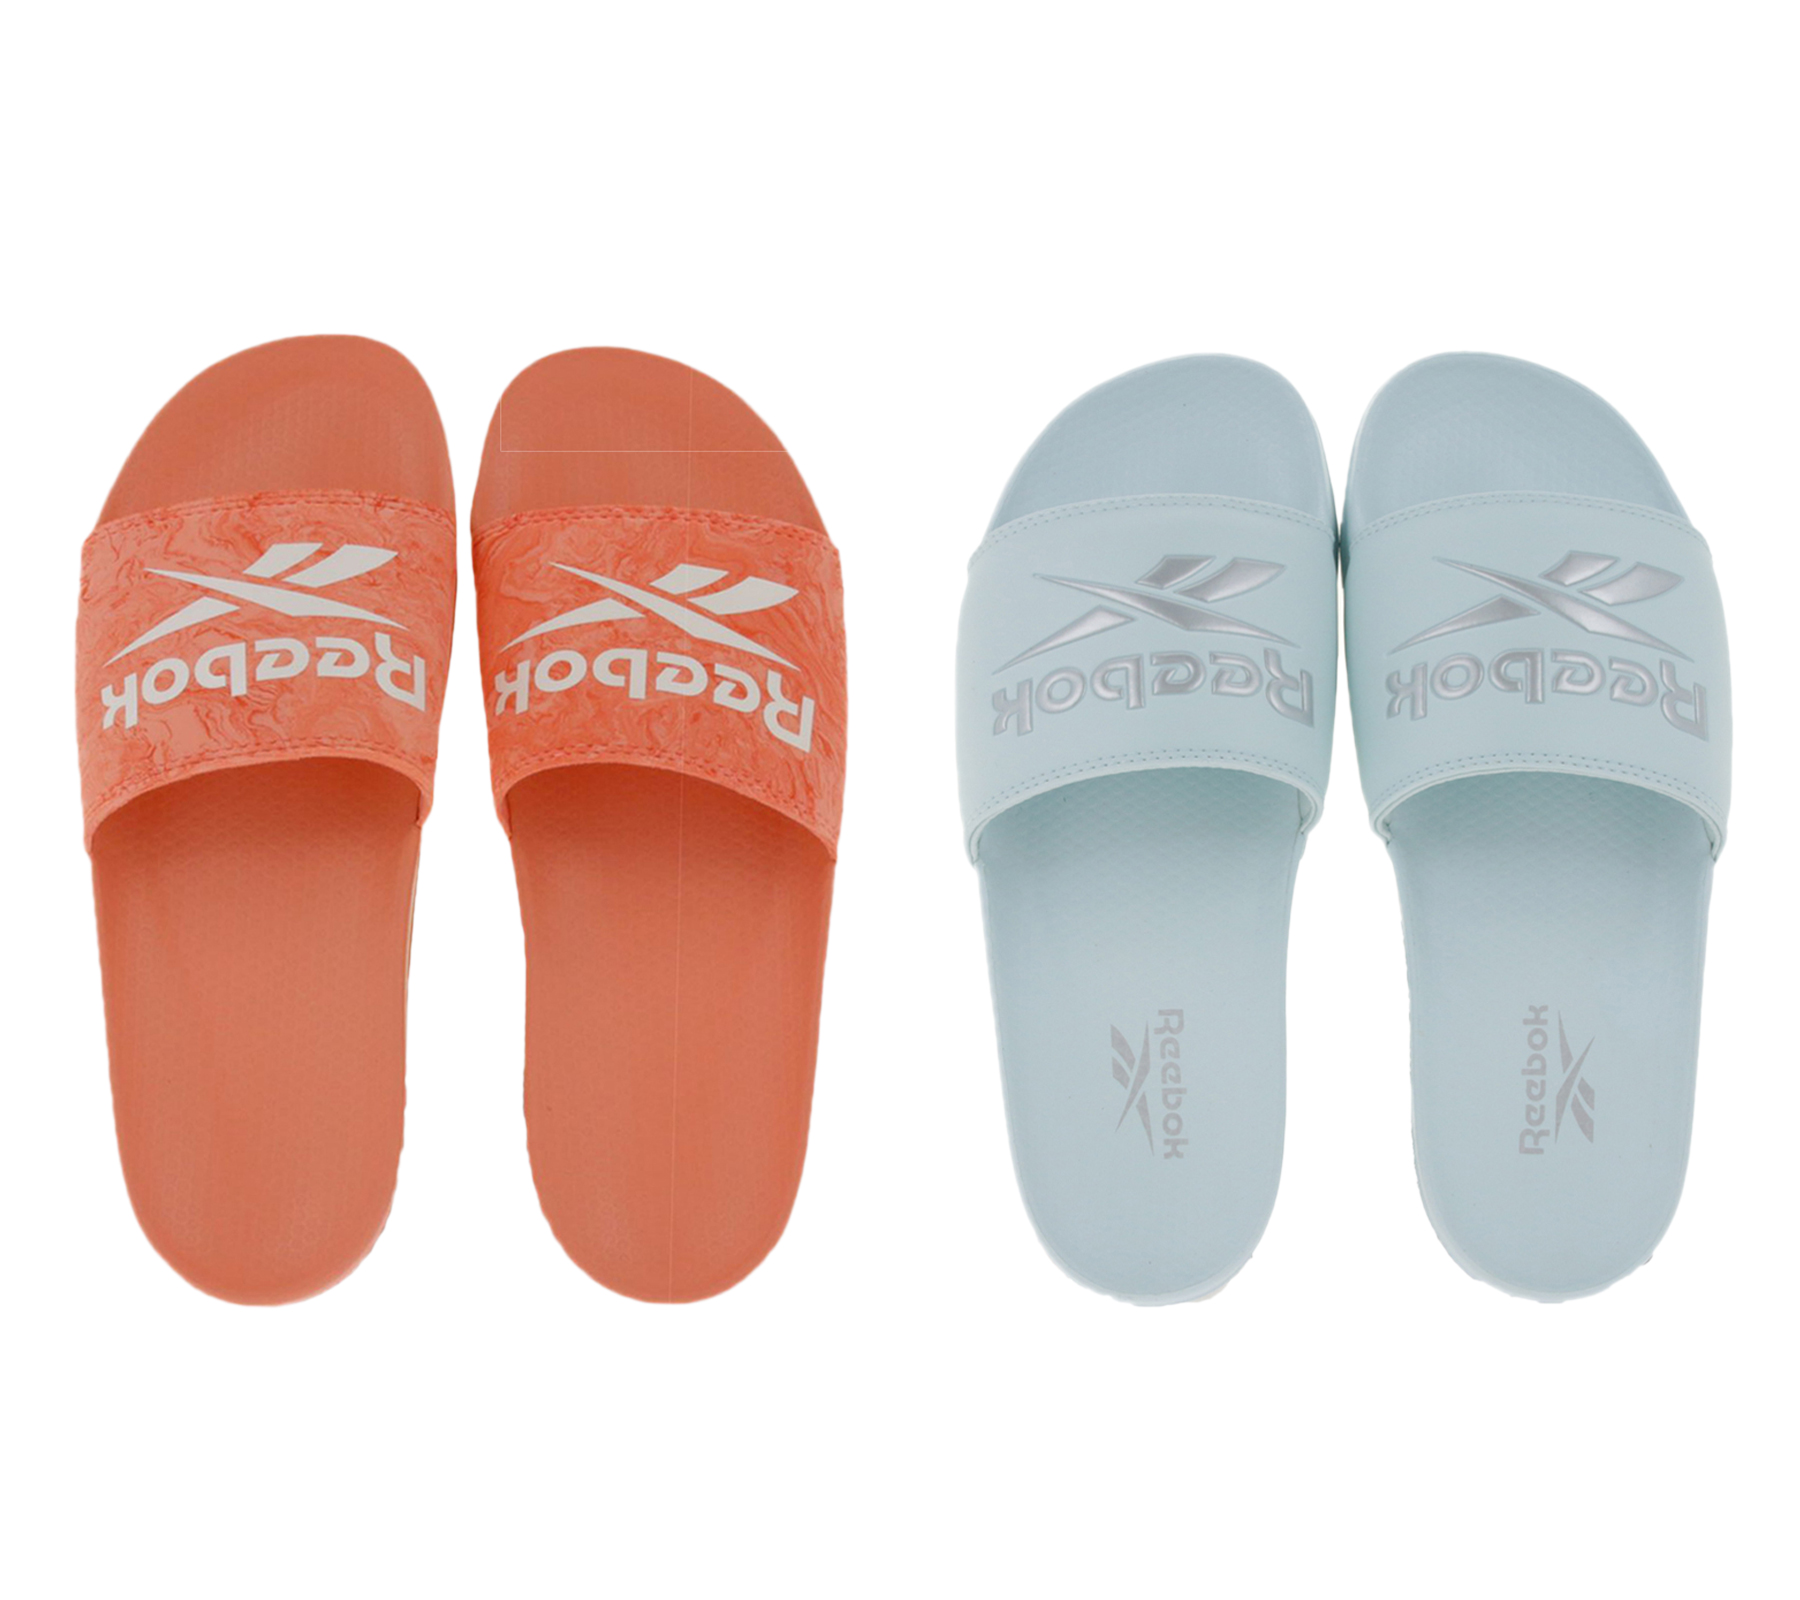 Reebok FULGERE und CLASSIC Sommer-Sandalen Badelatschen mit Logo-Aufdruck Rosa, Weiß oder Hellblau von Reebok